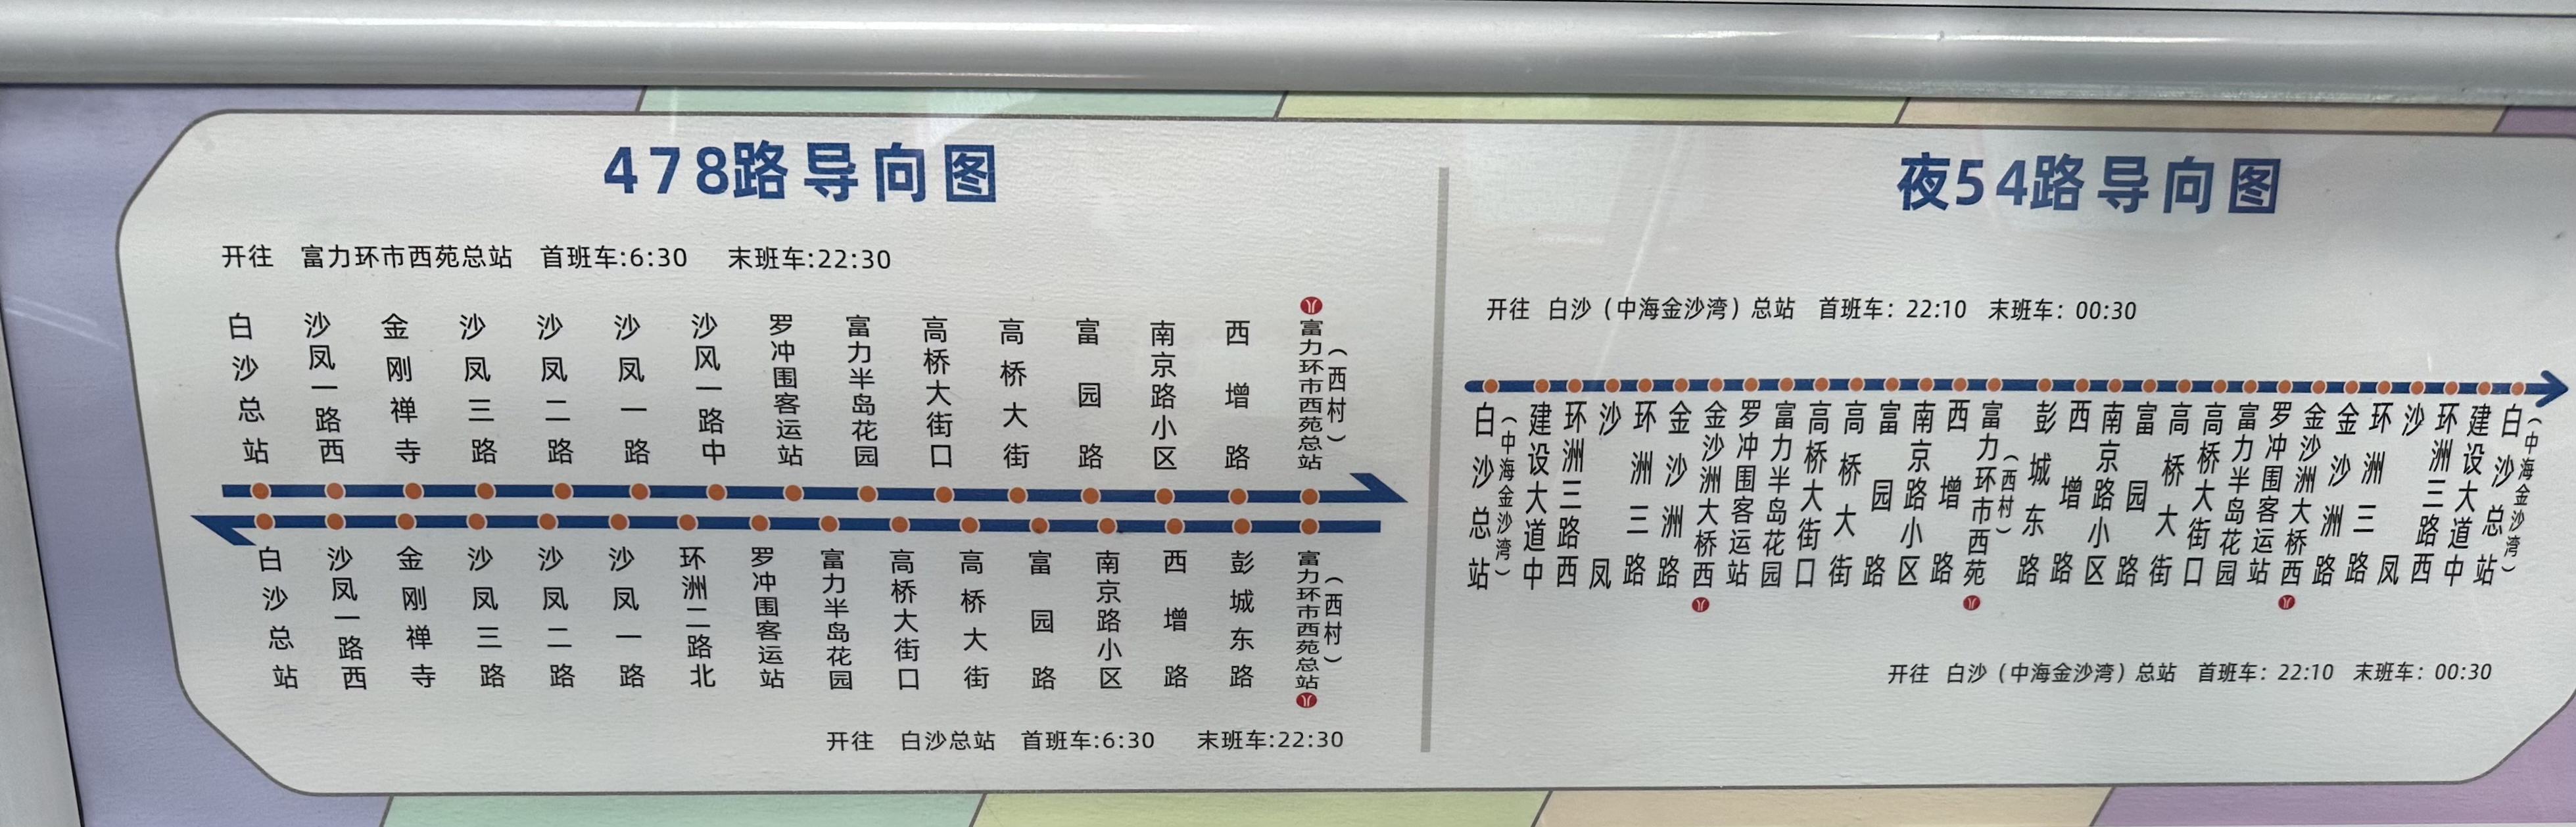 广州478路公交车路线